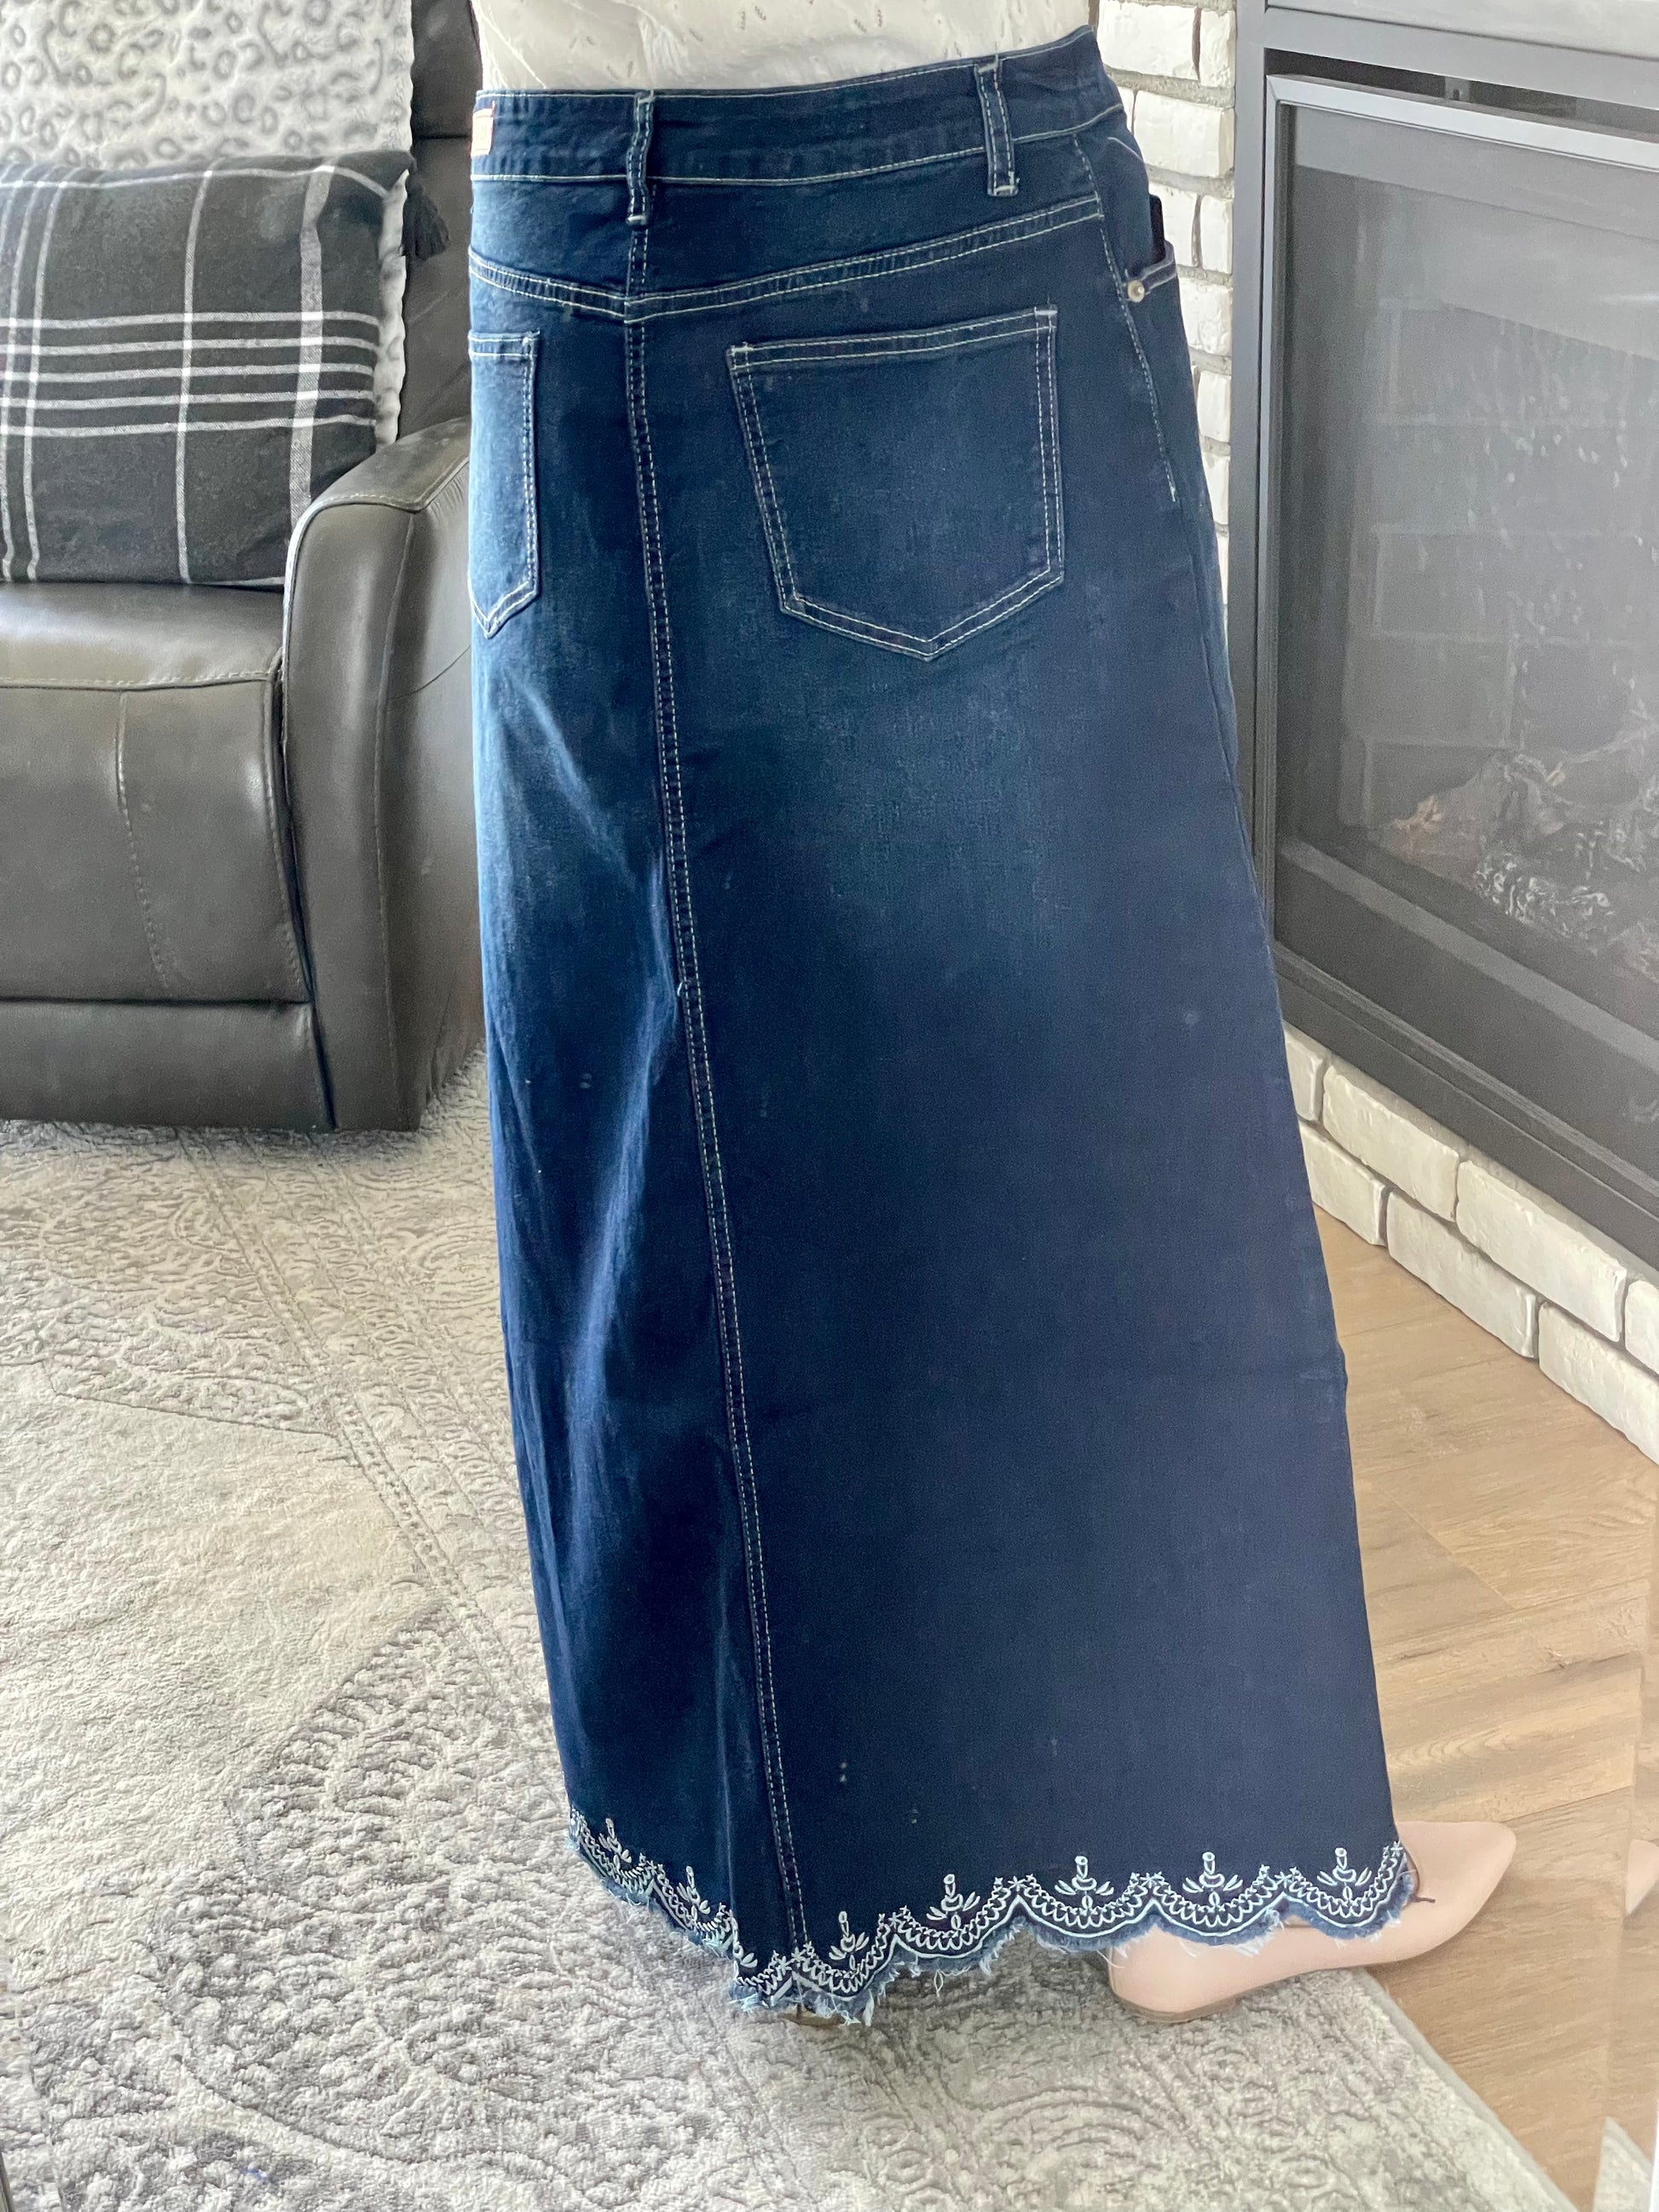 "Nora" Long Denim Skirt in Dark Indigo Wash - Ladies & Lavender Boutique